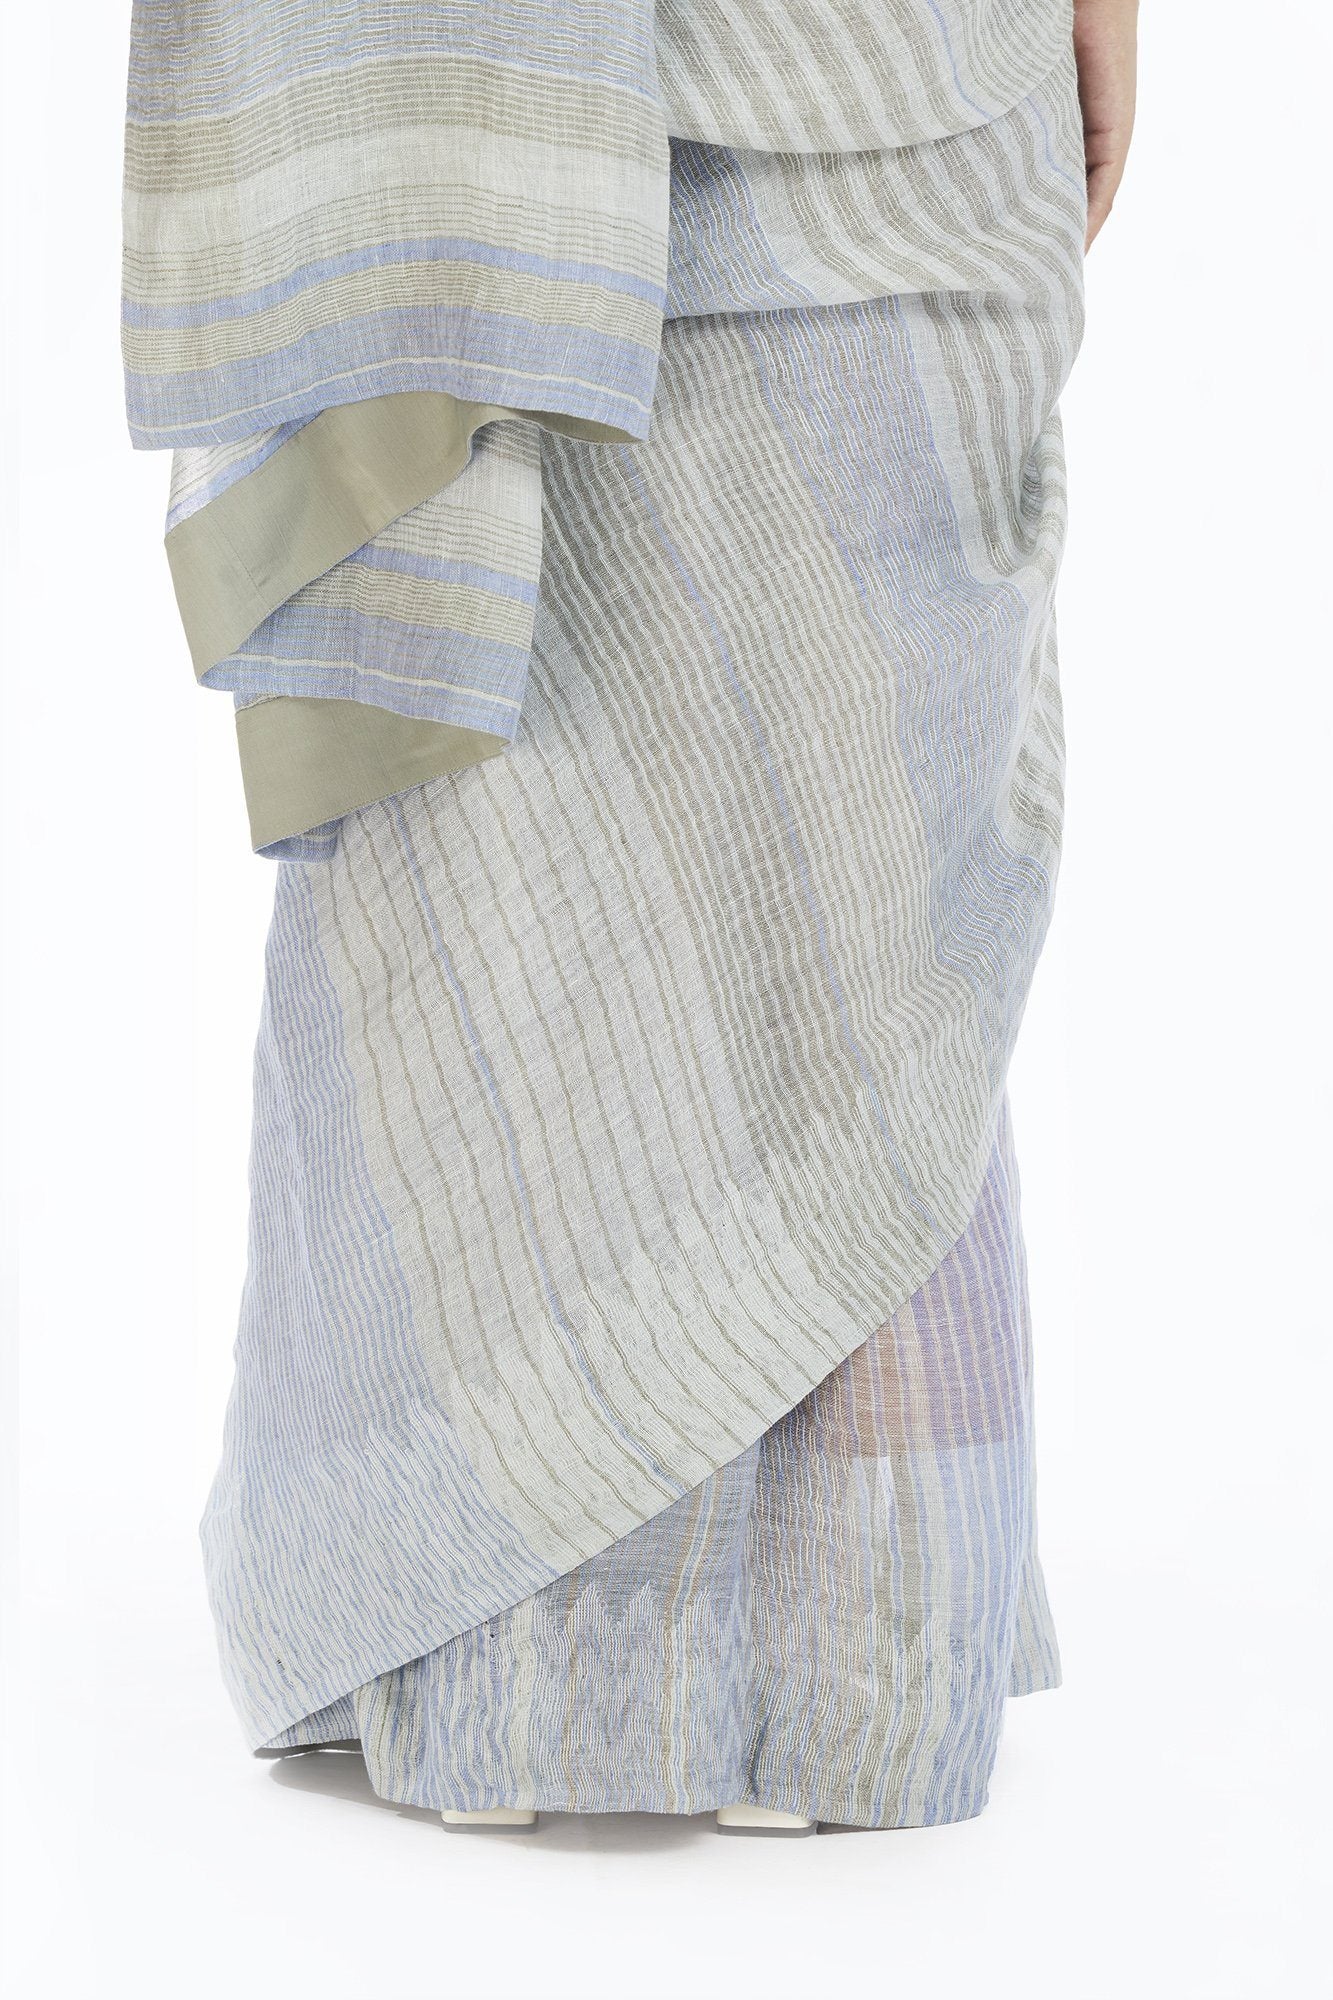 Handwoven Engineered Jaamdani Striped Linen Saree Fashion Akaaro